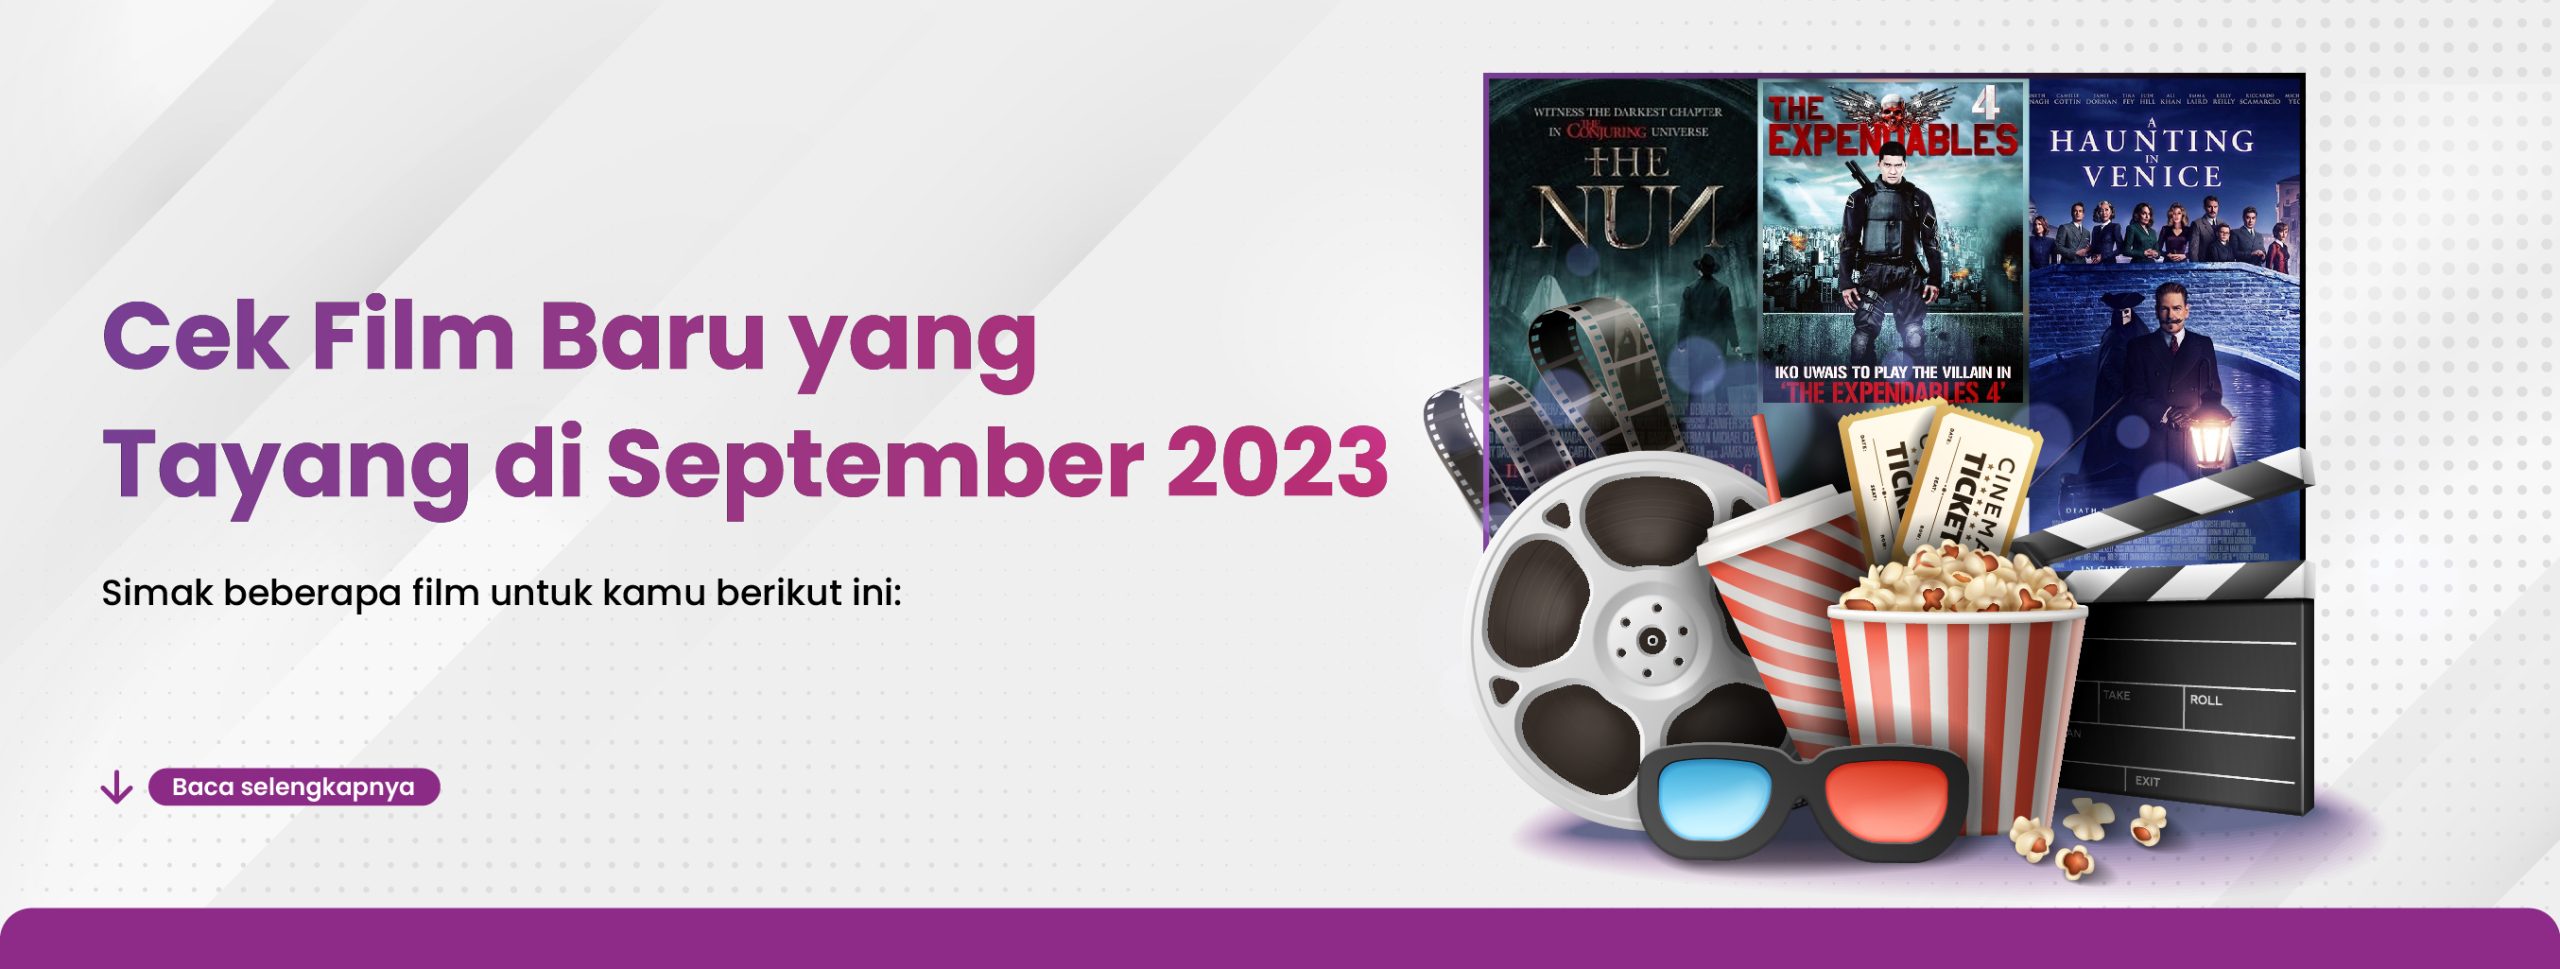 Cek Film Baru yang Tayang di September 2023